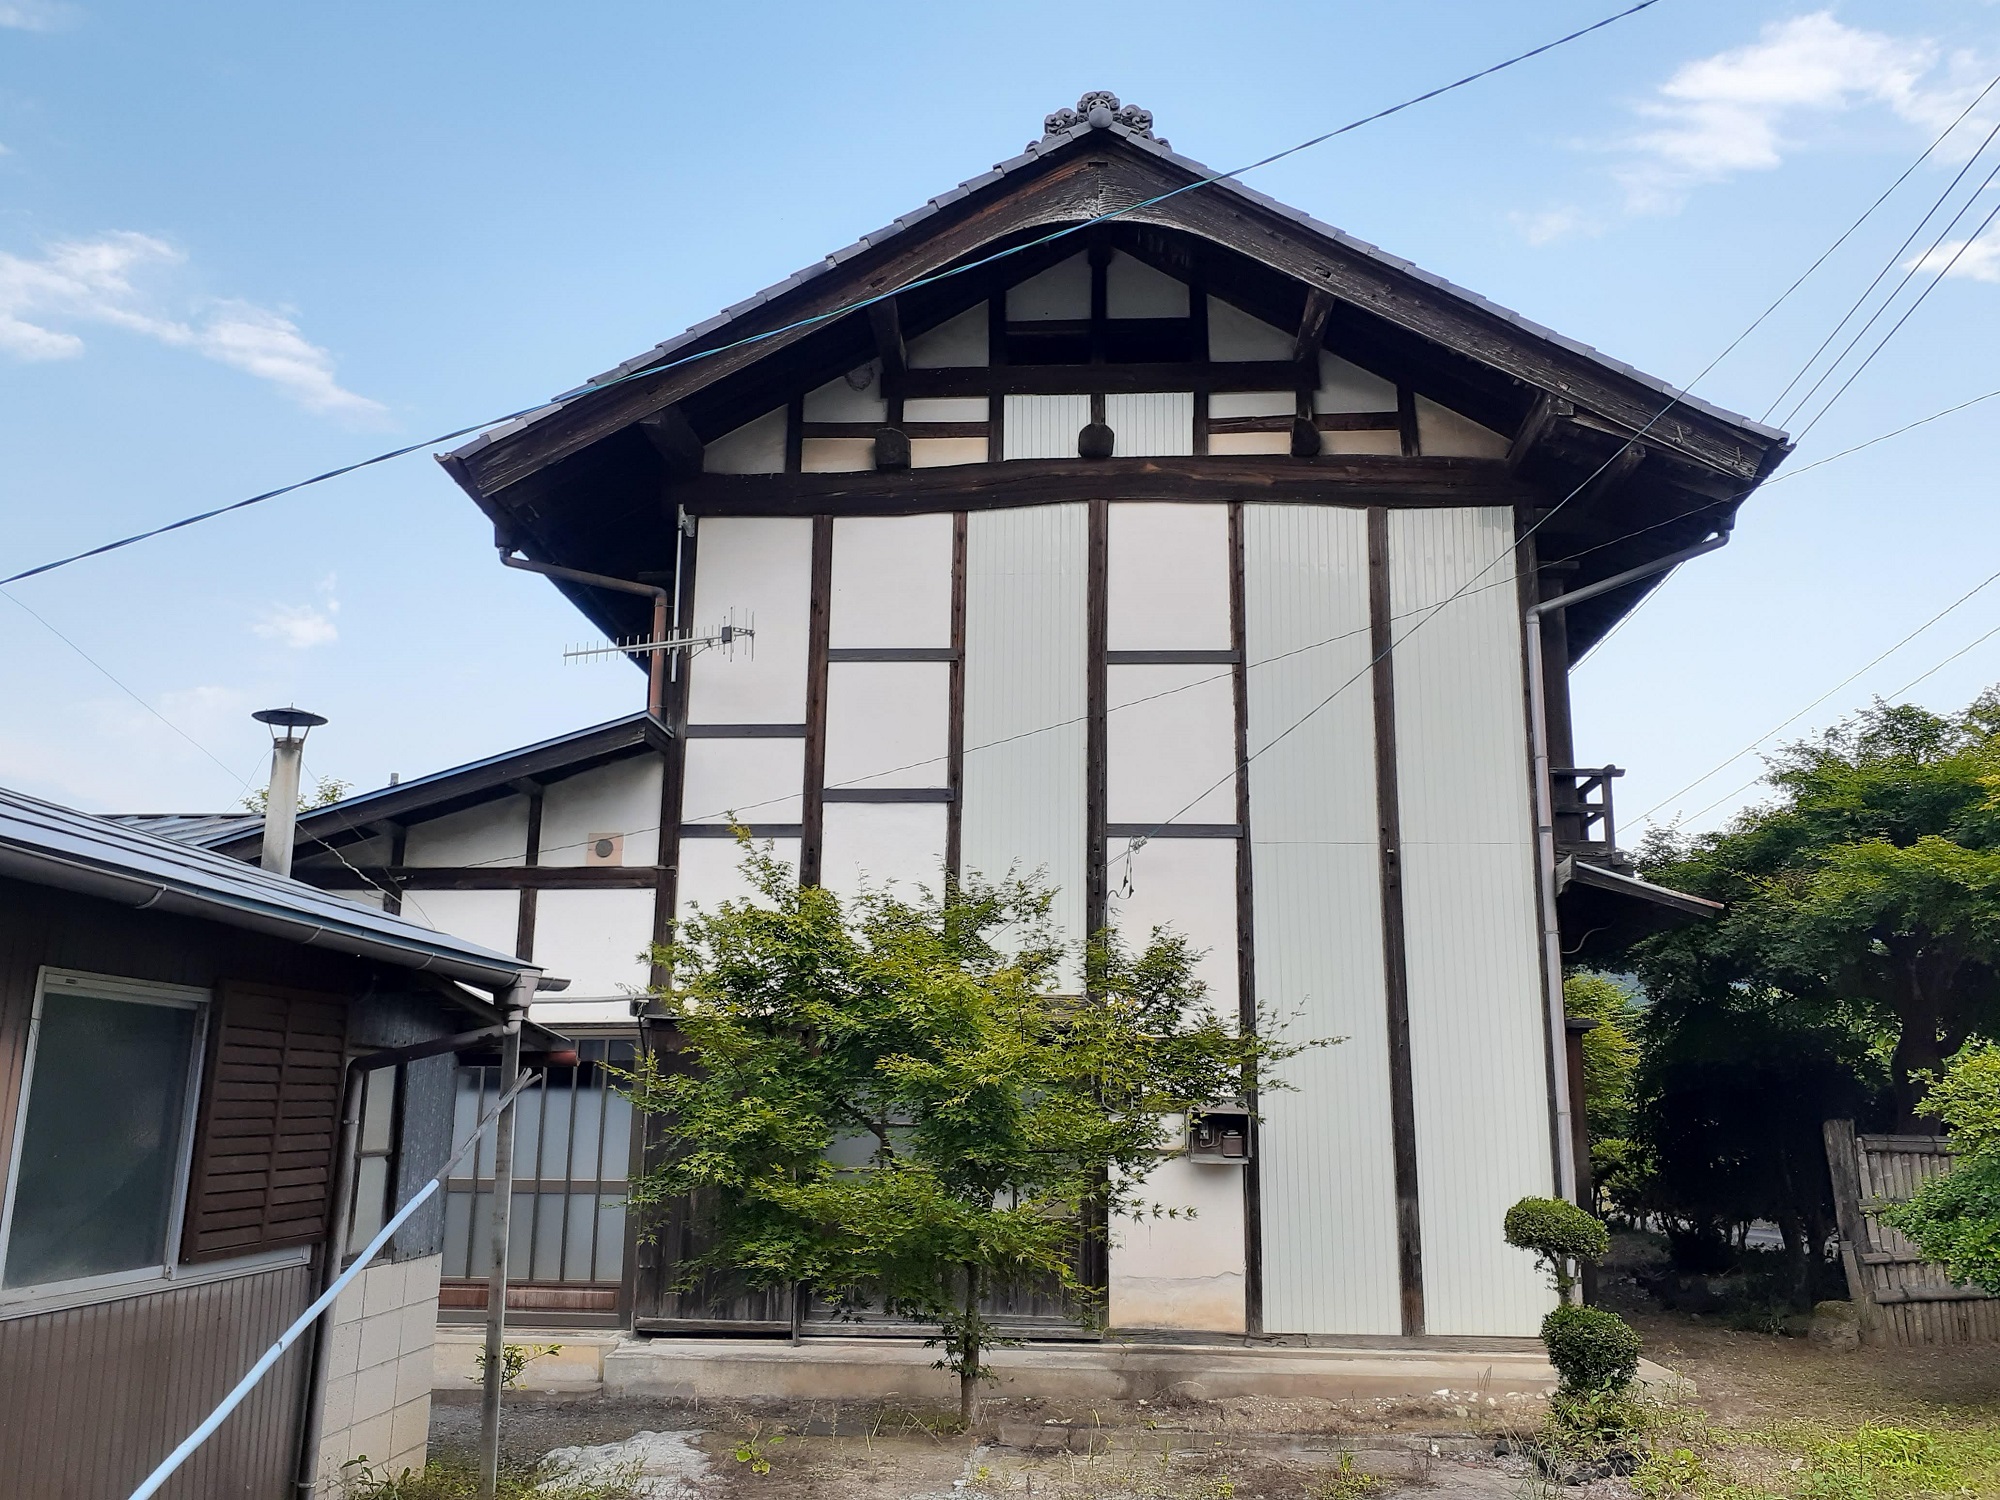 Teihaku Chichibu Nagatoro Folk House Rental